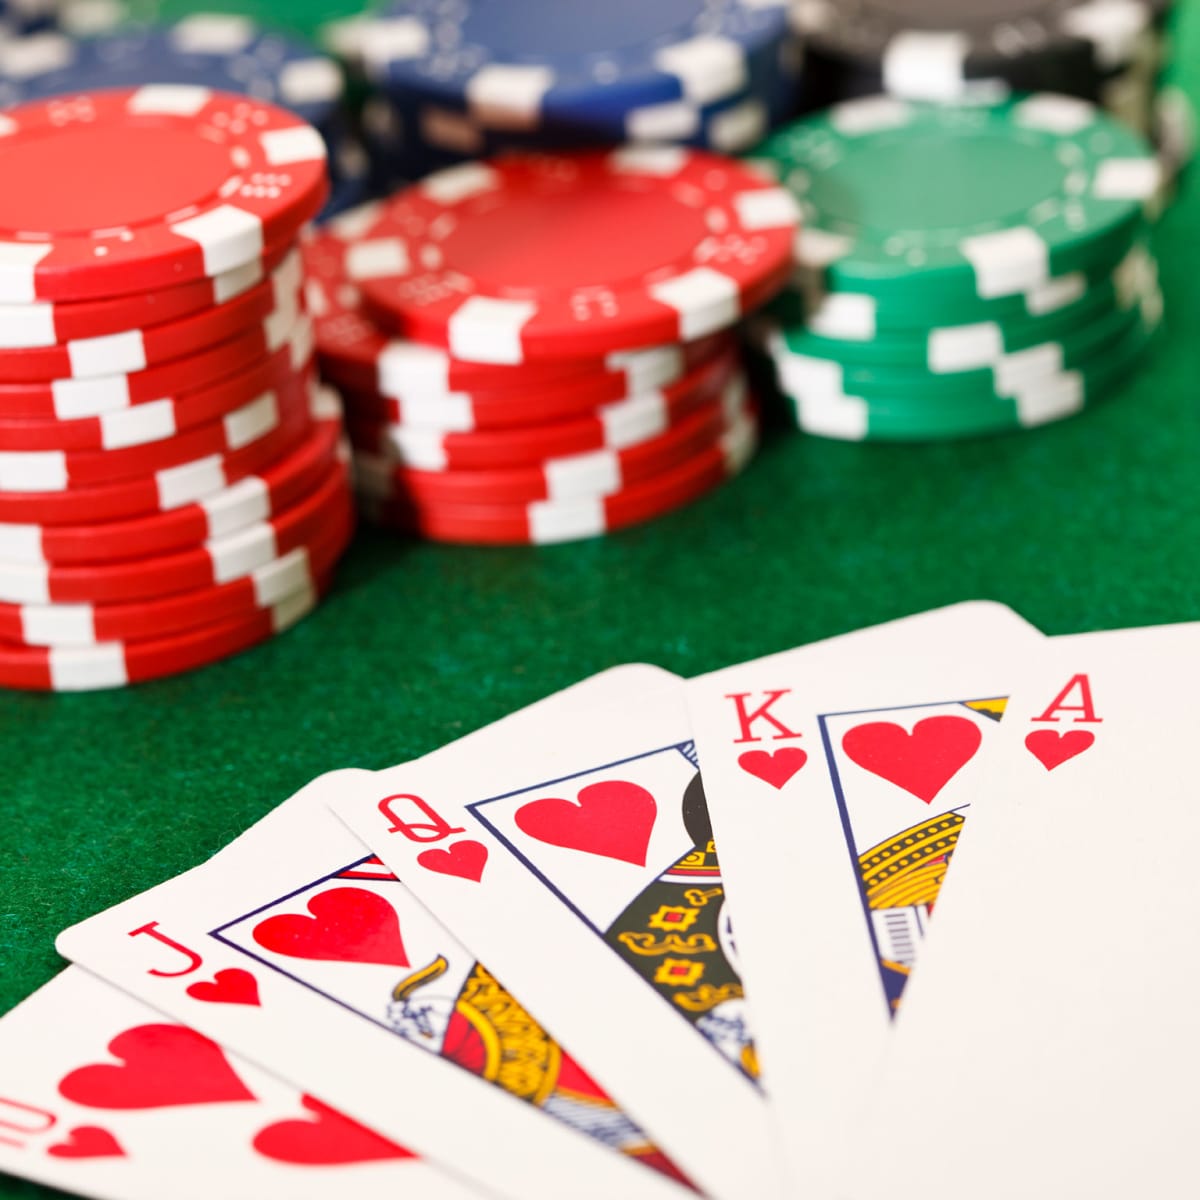 Bonus Round of Free Spins in Online Casino Slots